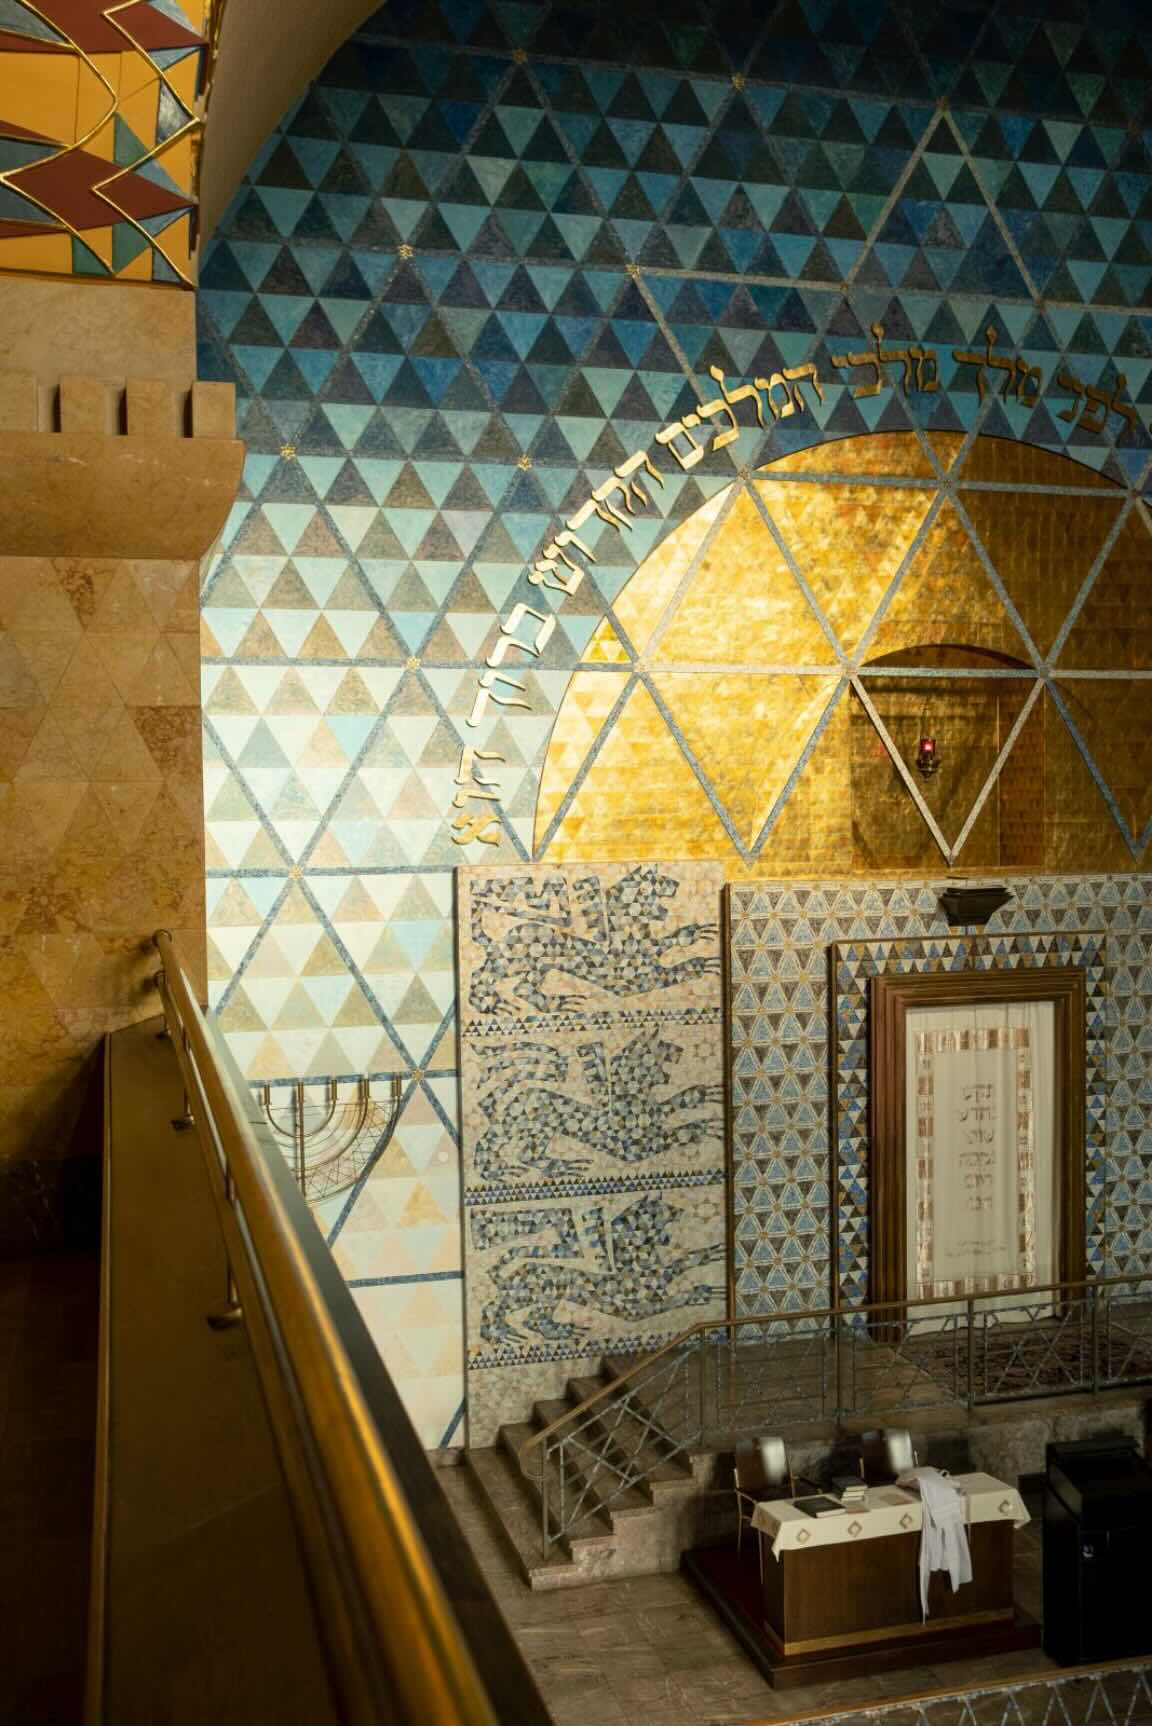 Innenraum der Synagoge mit Wandverziehungen